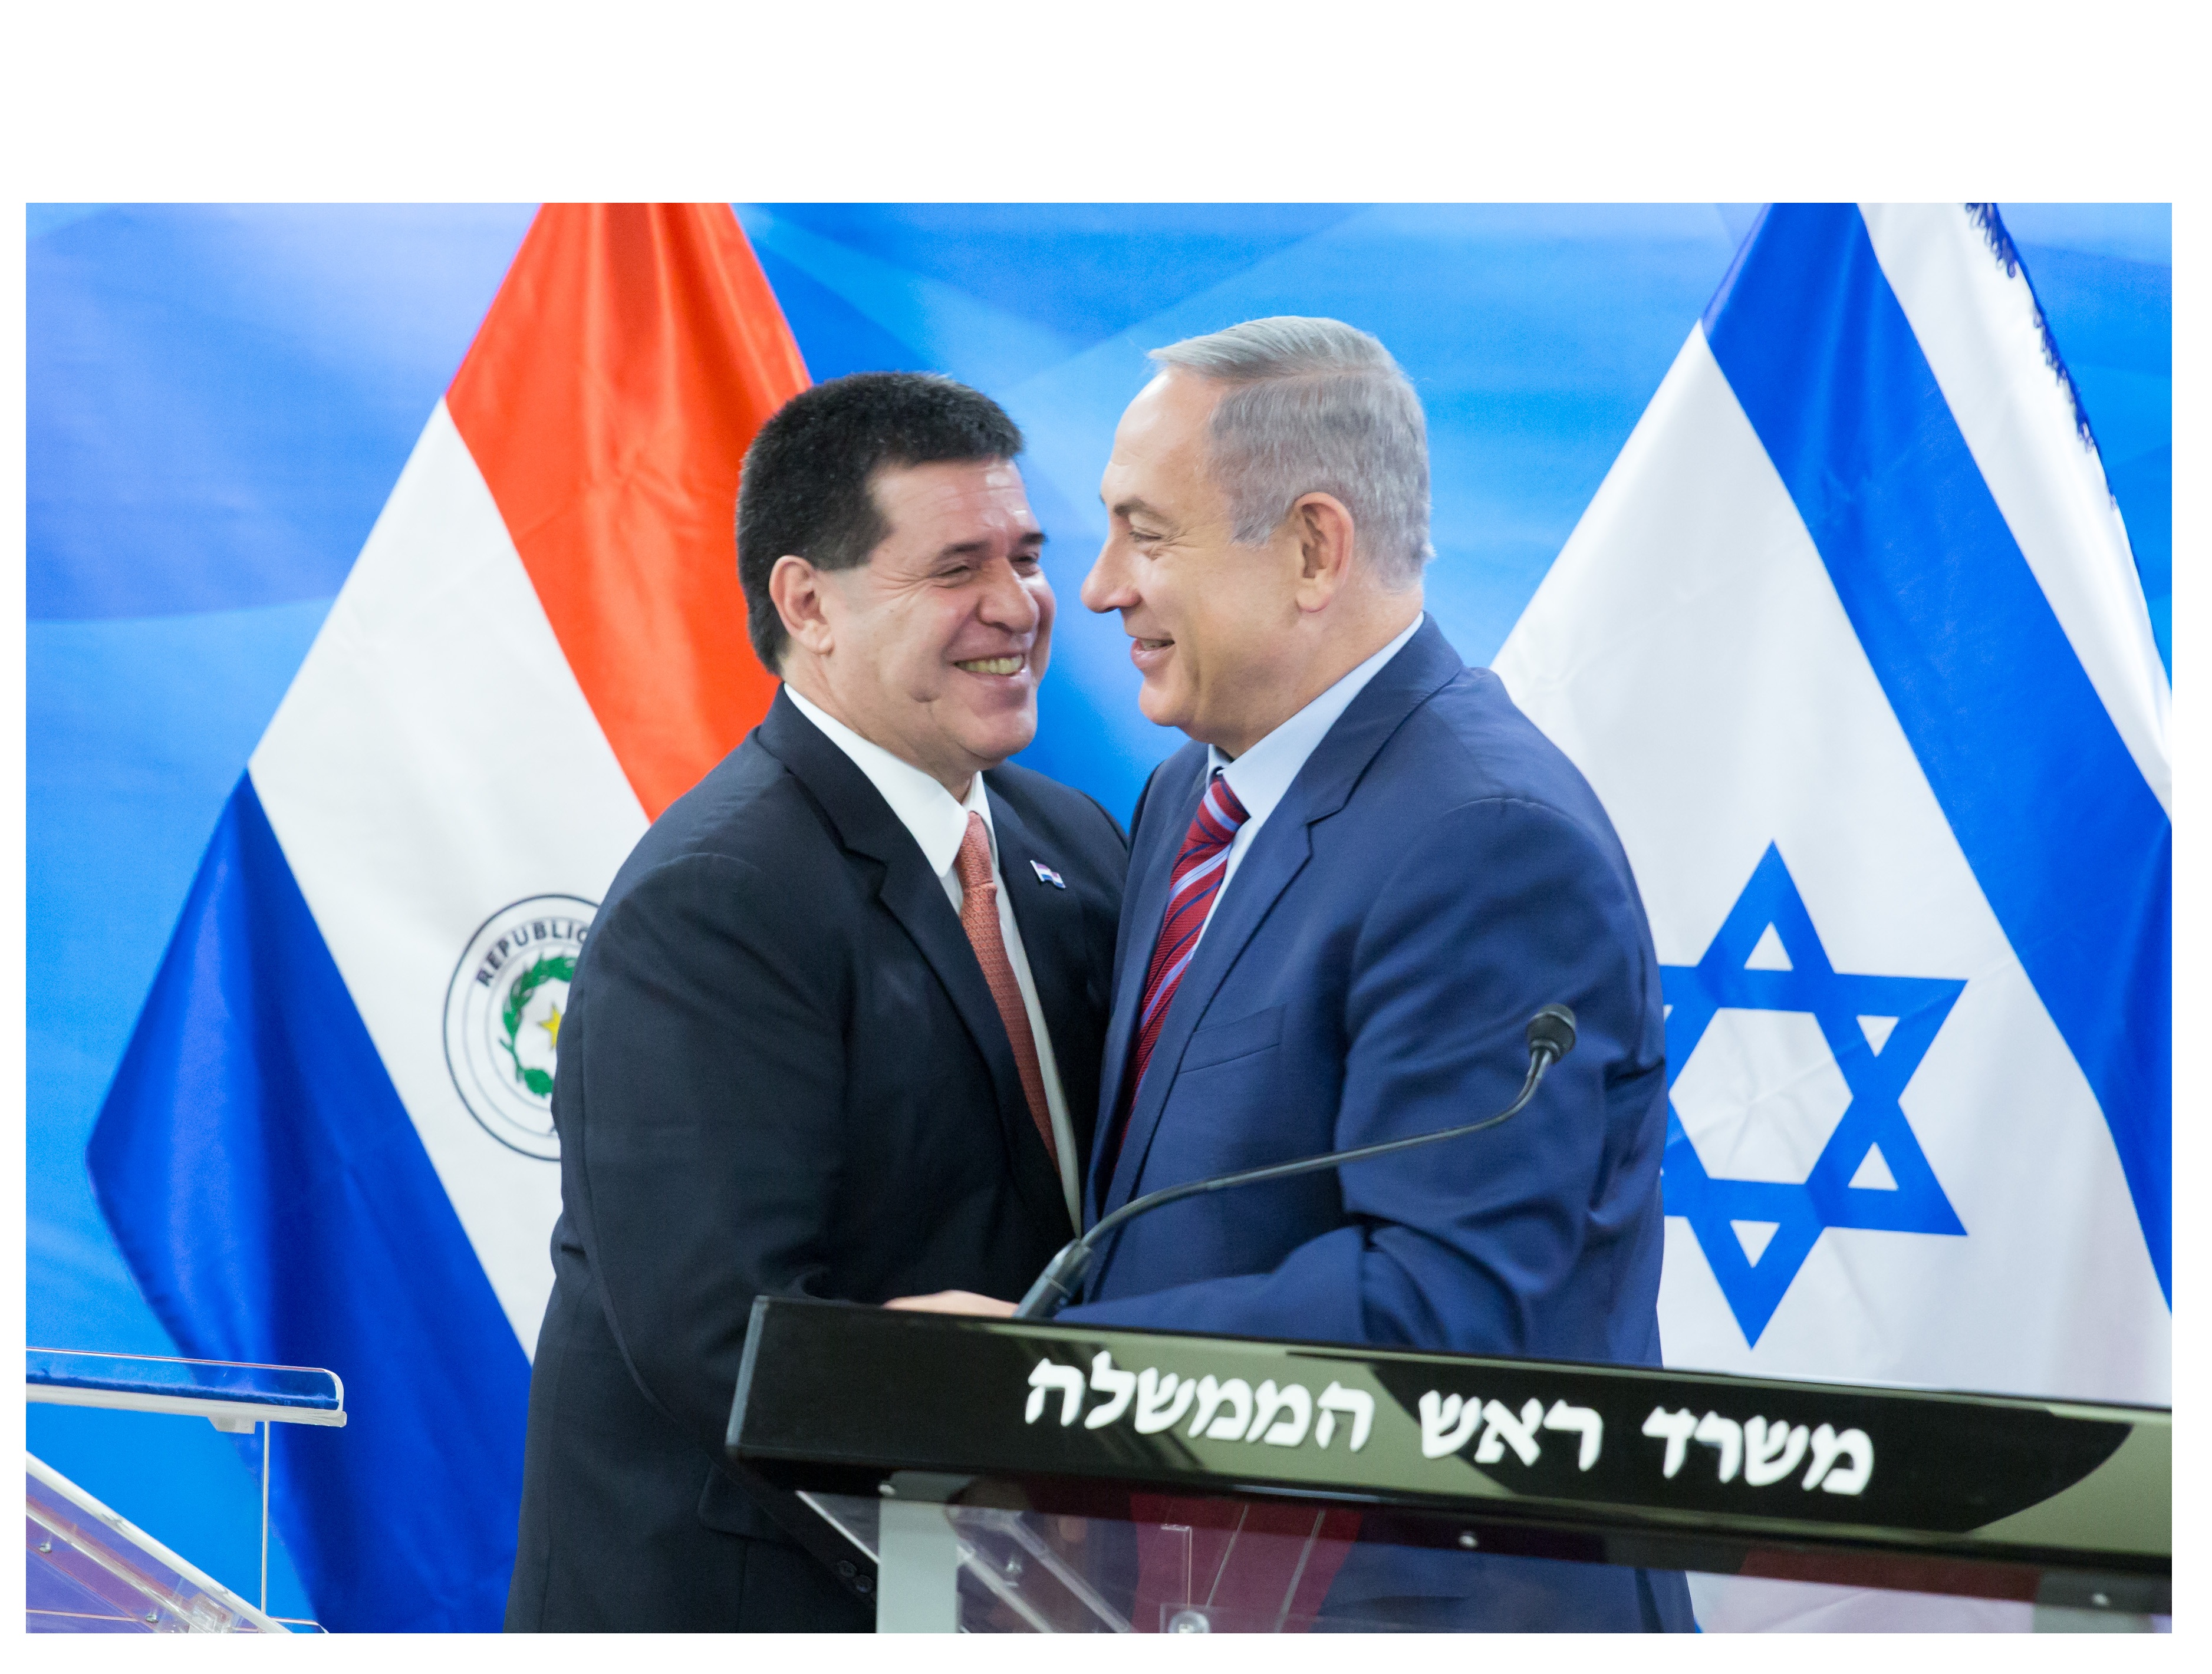 Cartes viajó a Israel para la inauguración de la embajada paraguaya en Jerusalén